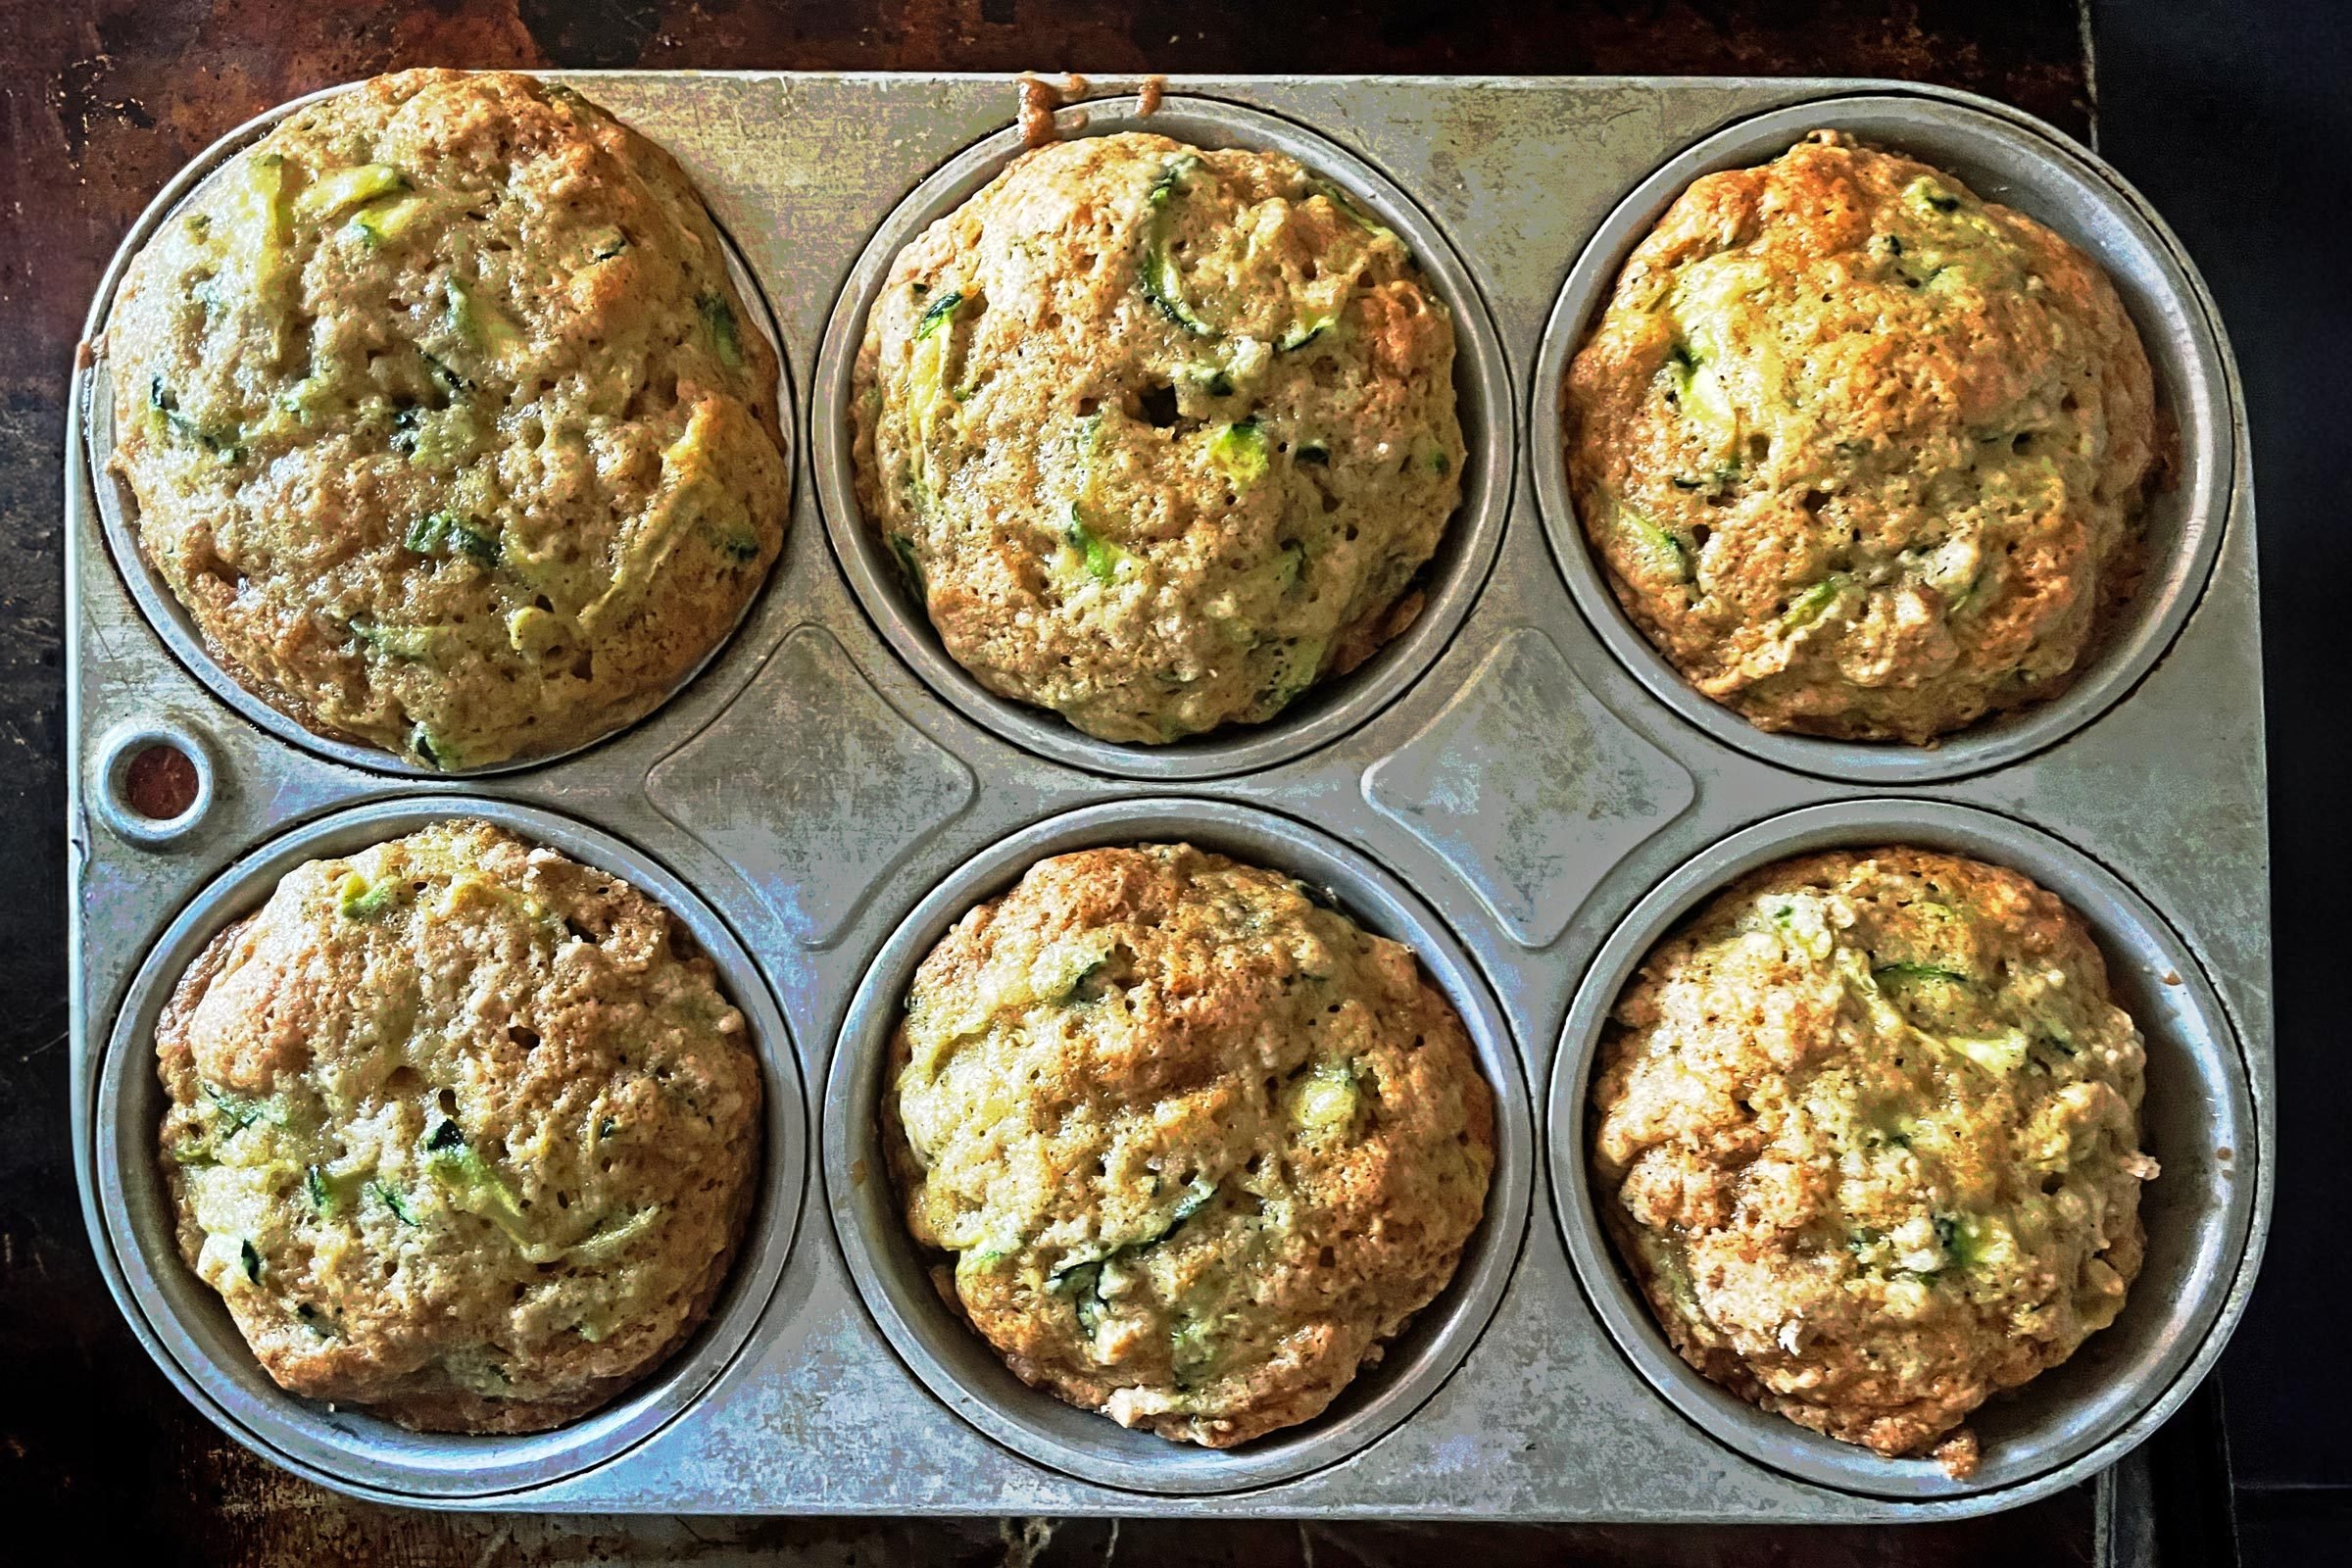 zucchini muffins in a pam